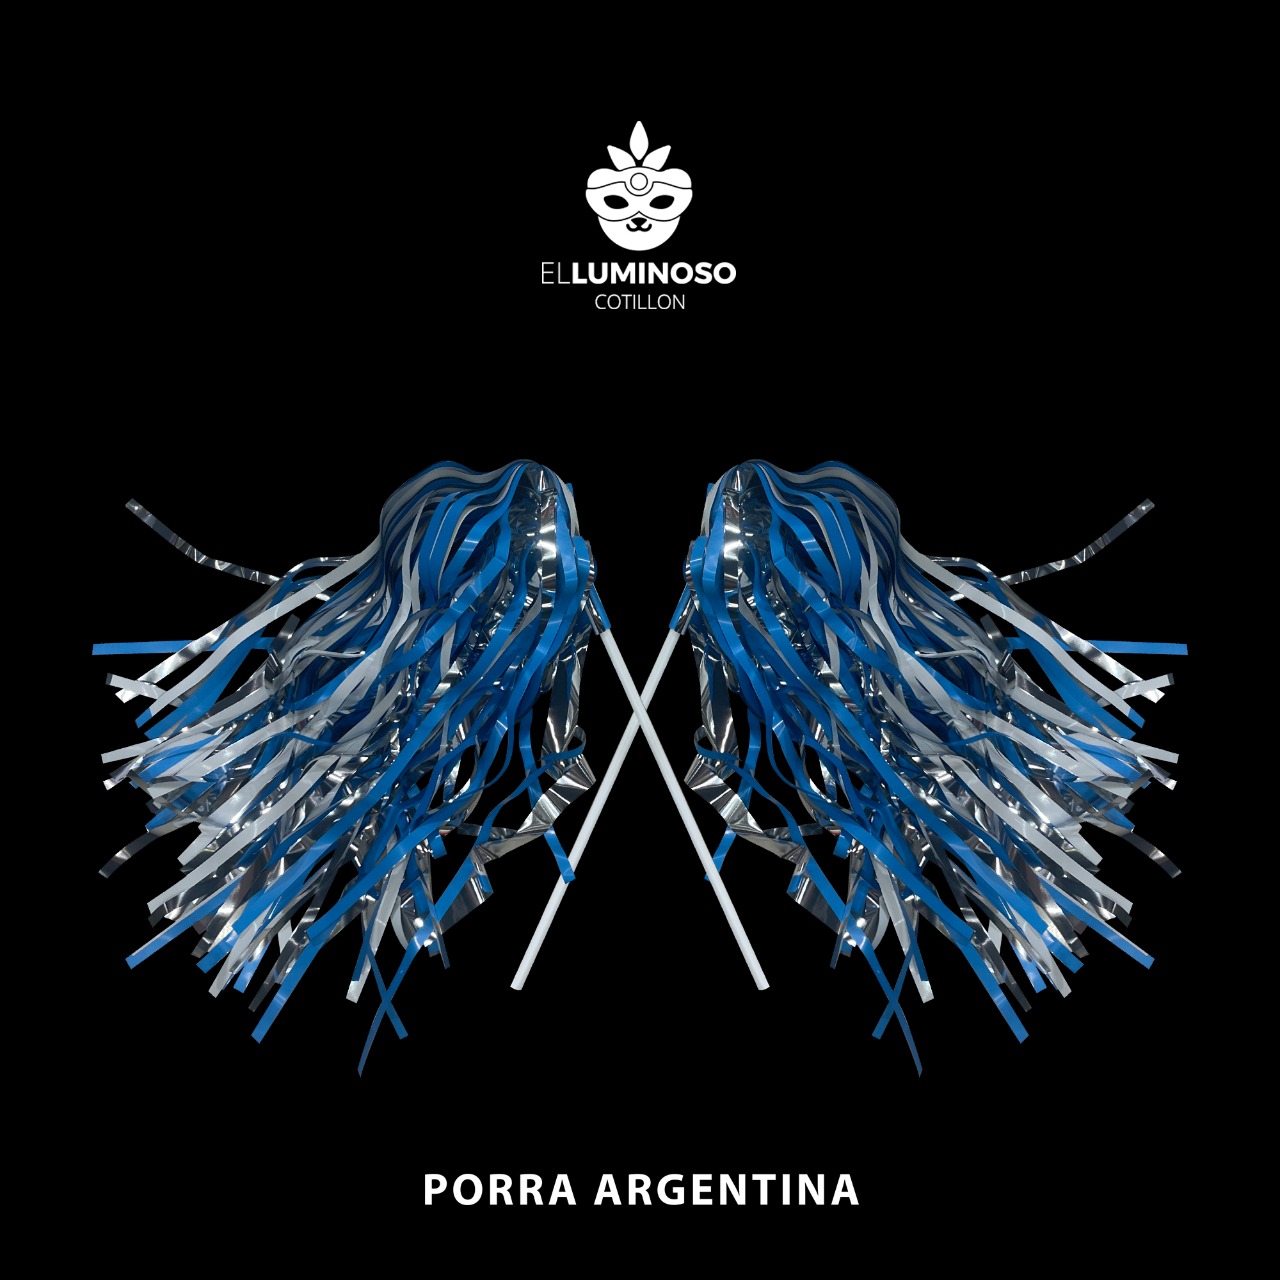 PORRA ARGENTINA